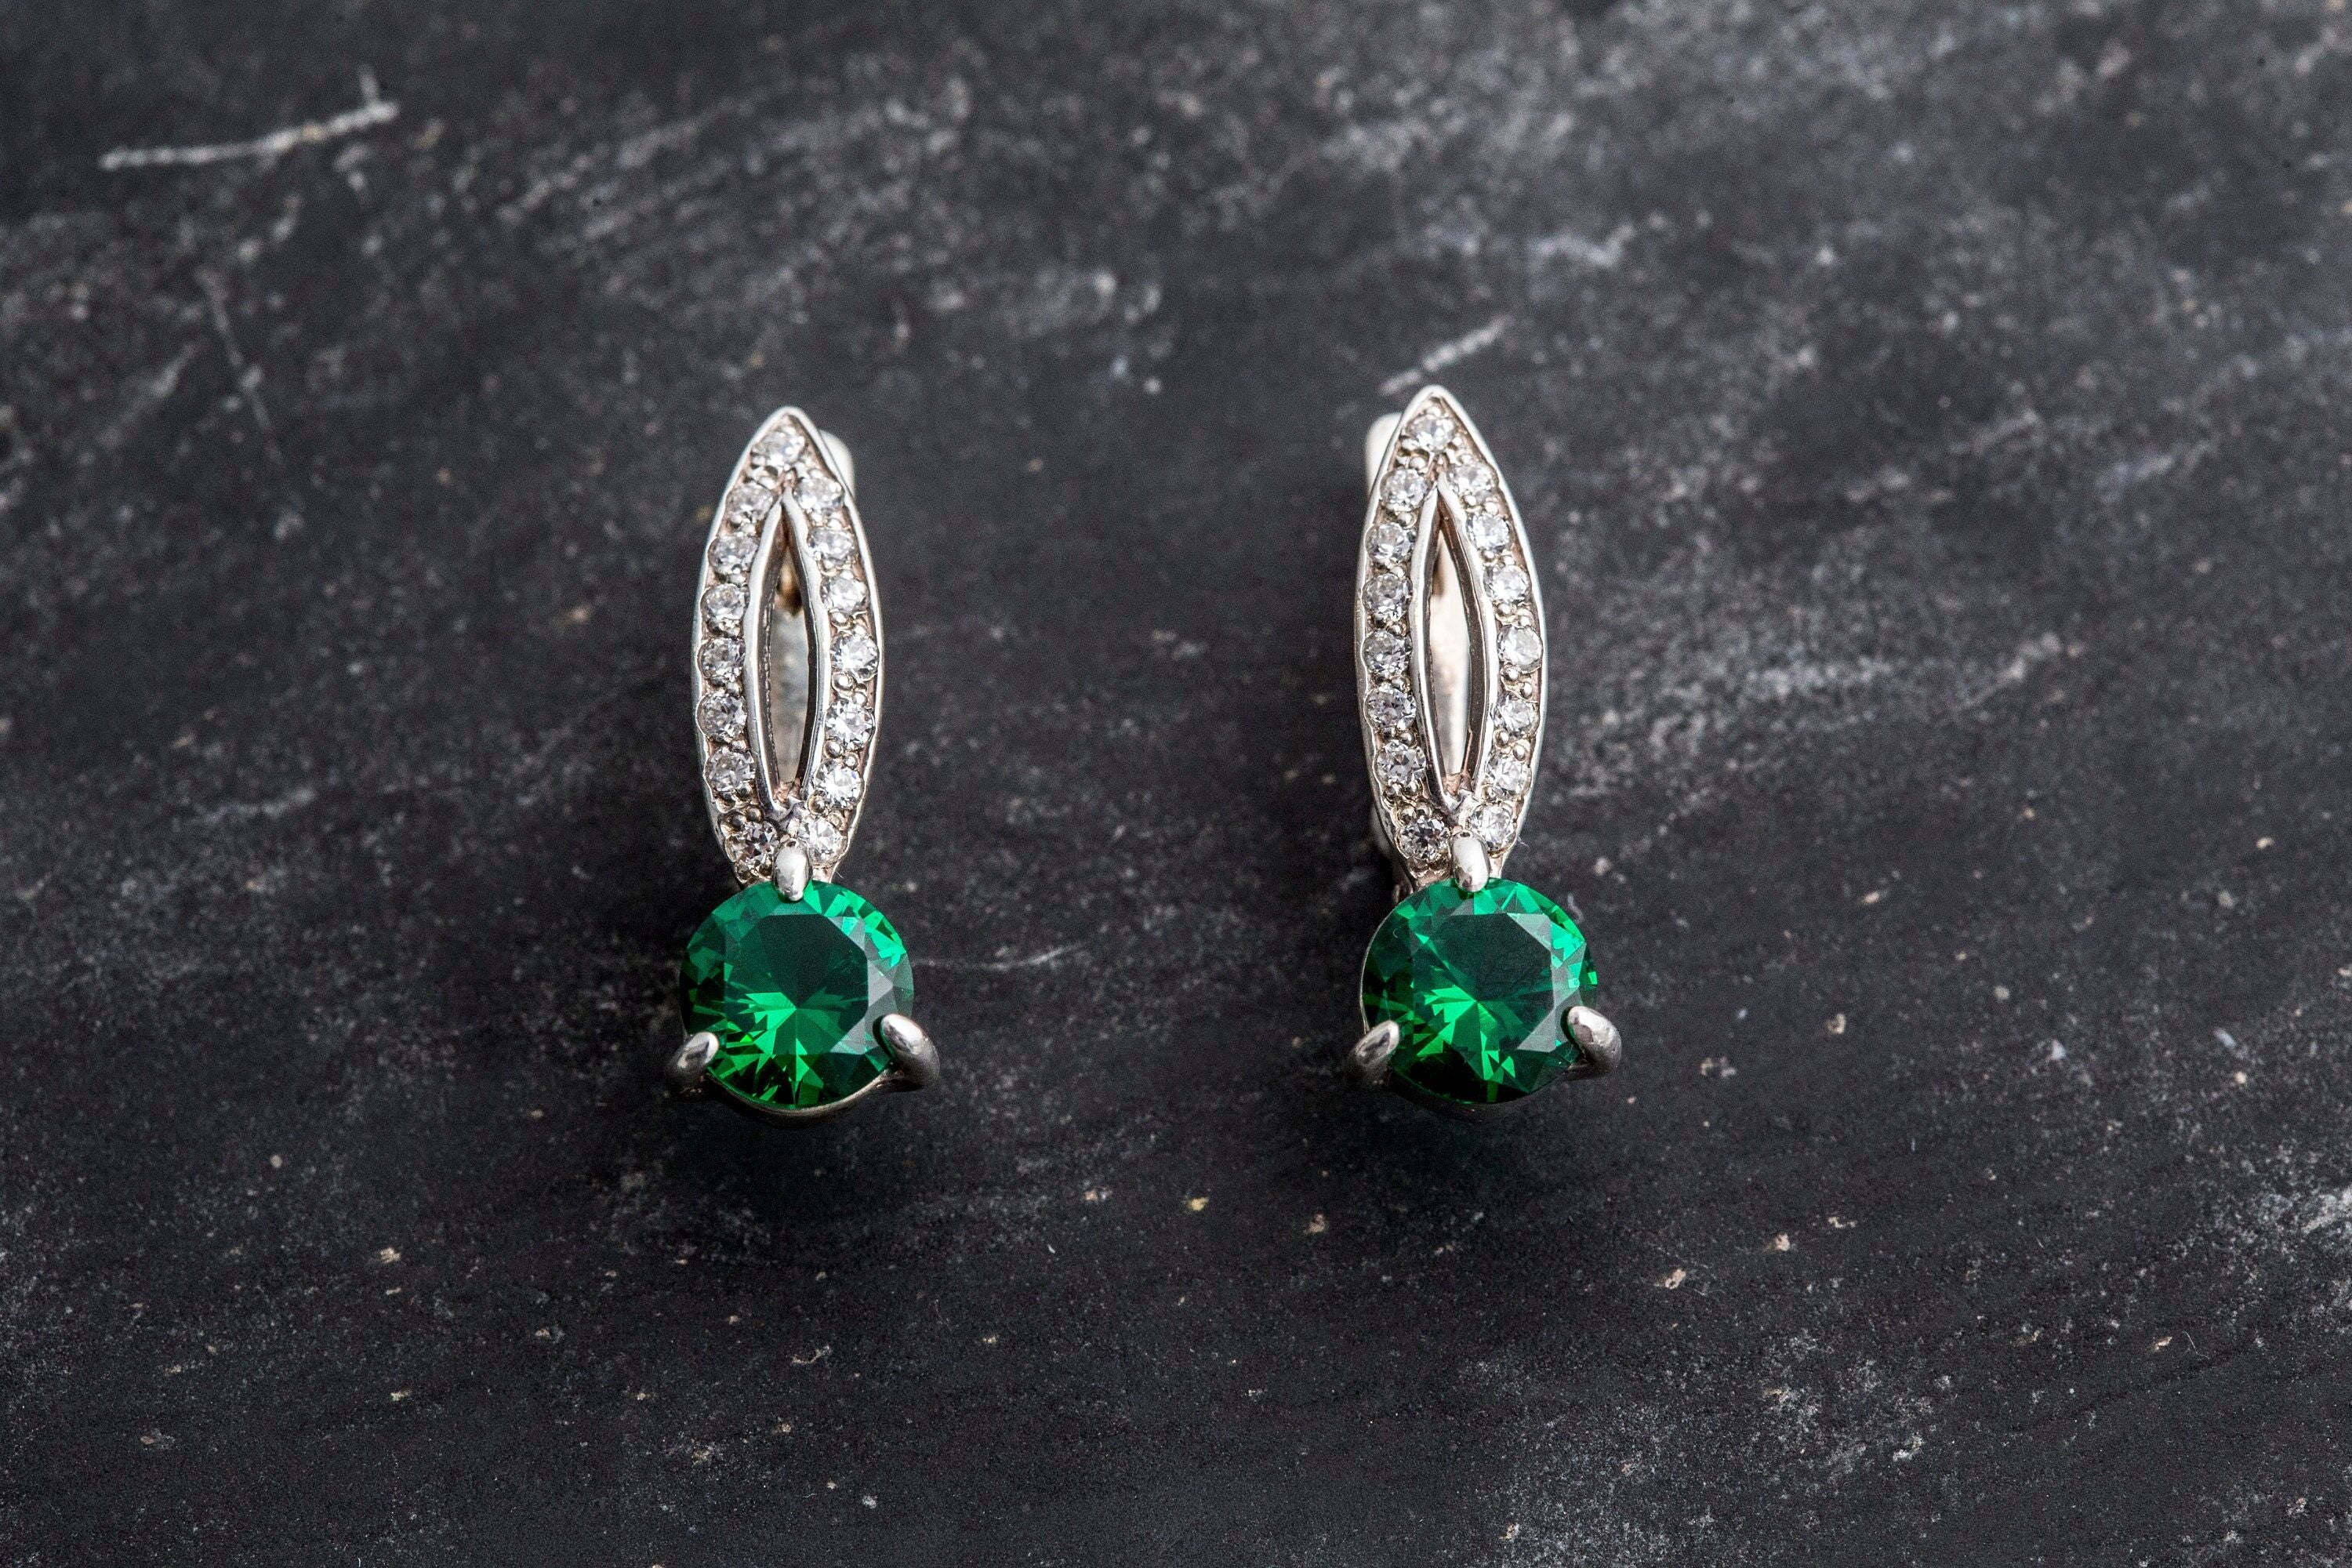 Green Emerald Earrings - Drop Emerald Earrings, Vintage Earrings